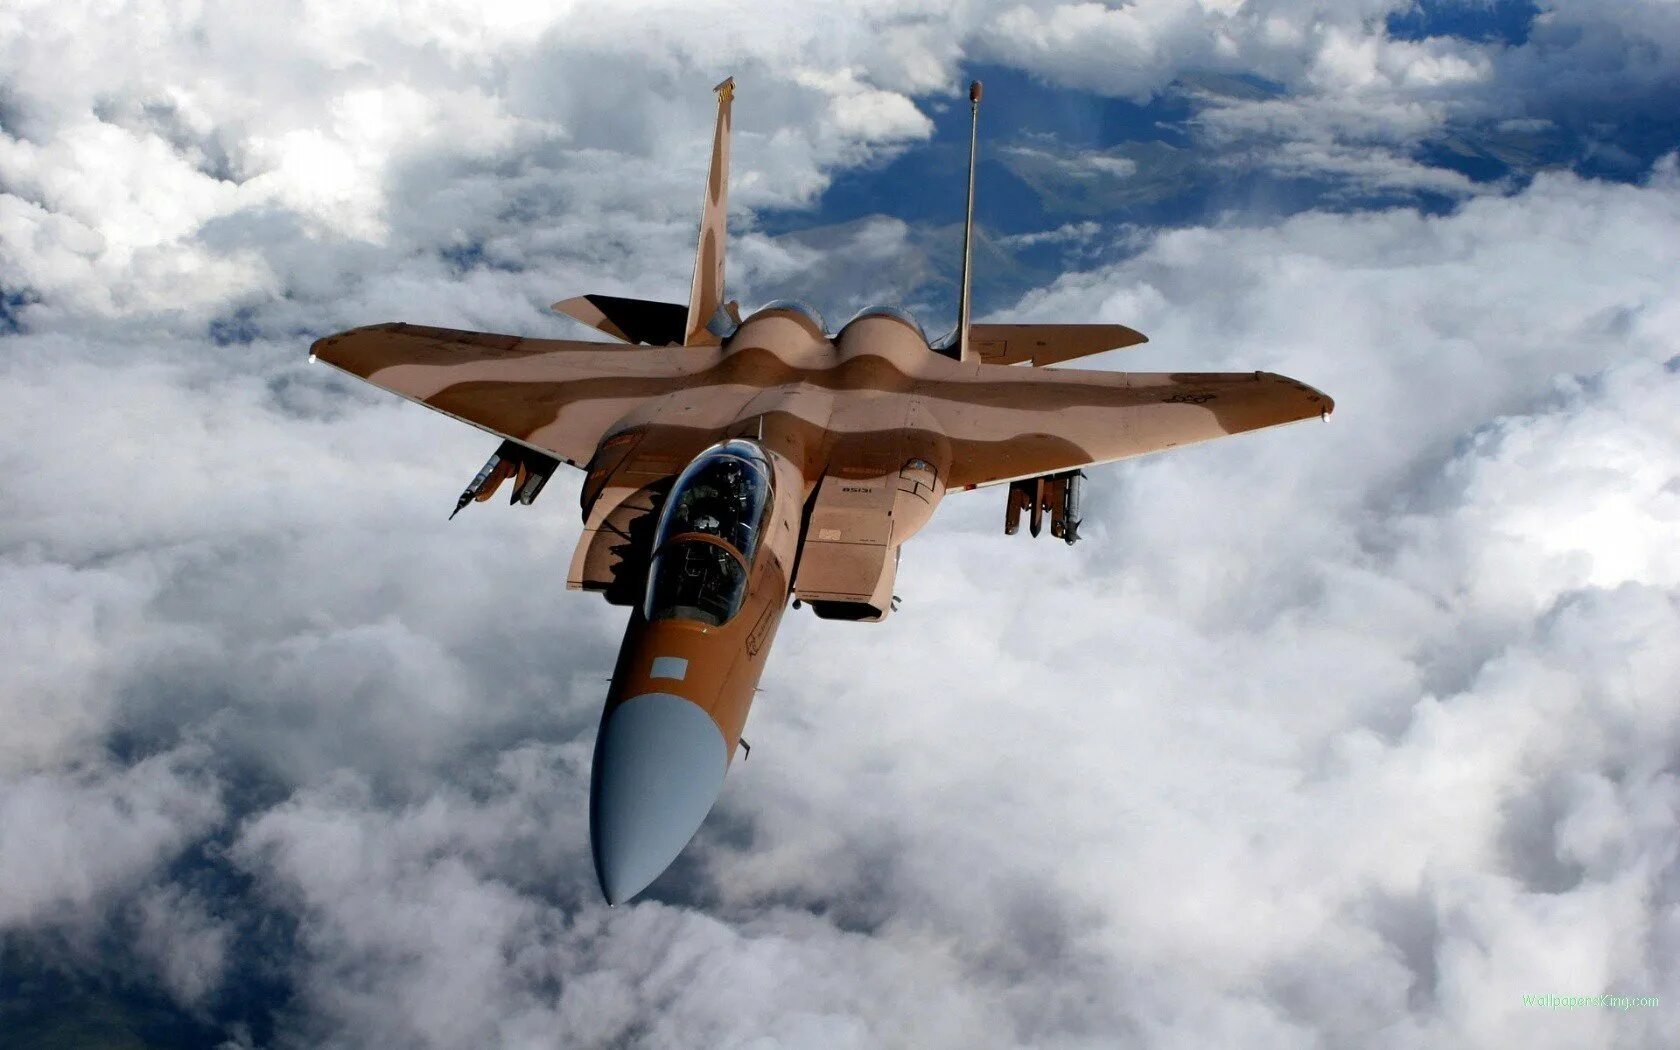 Сегодня летал истребитель. Макдоннел-Дуглас f-15 игл. F 15 истребитель. F 15 Eagle истребитель. F-15 Aggressor.